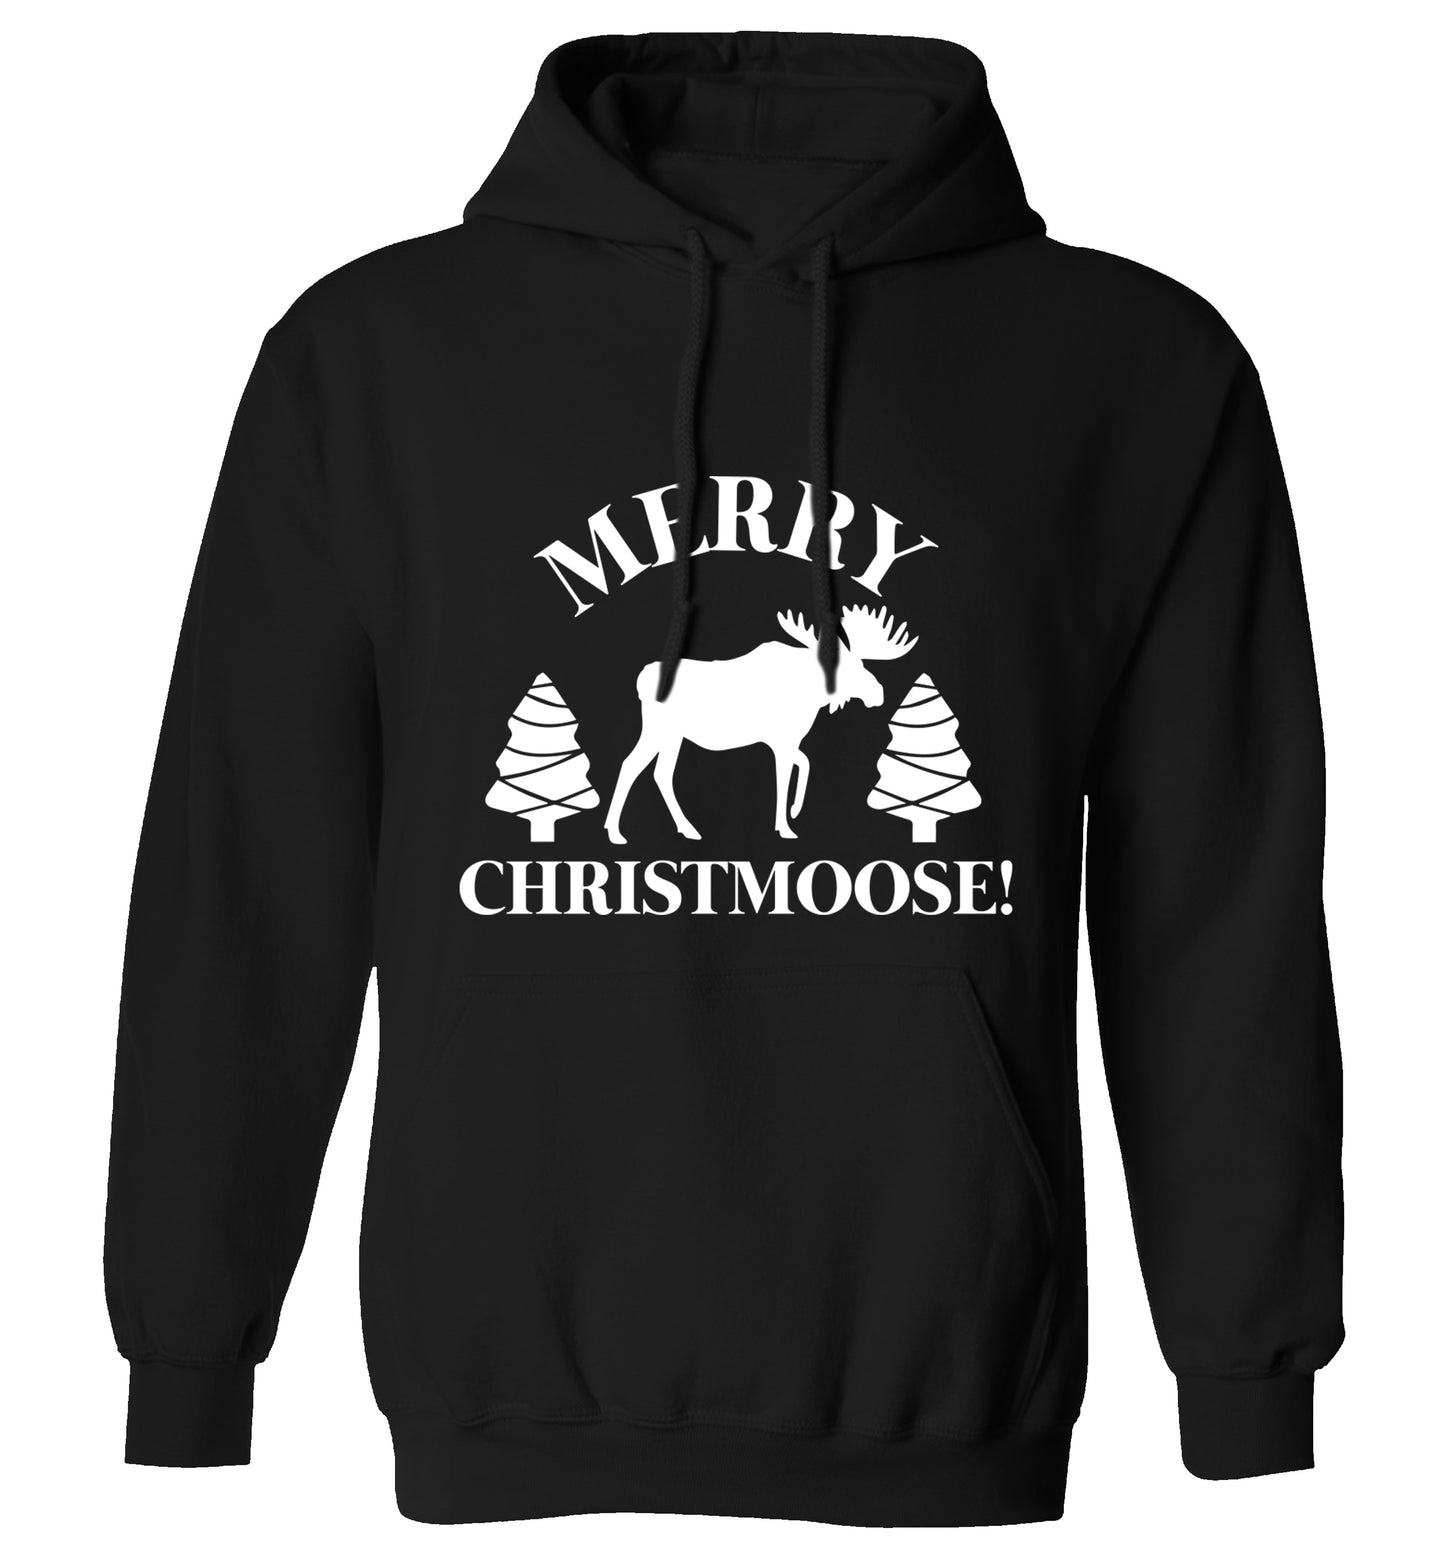 Merry Christmoose adults unisex black hoodie 2XL